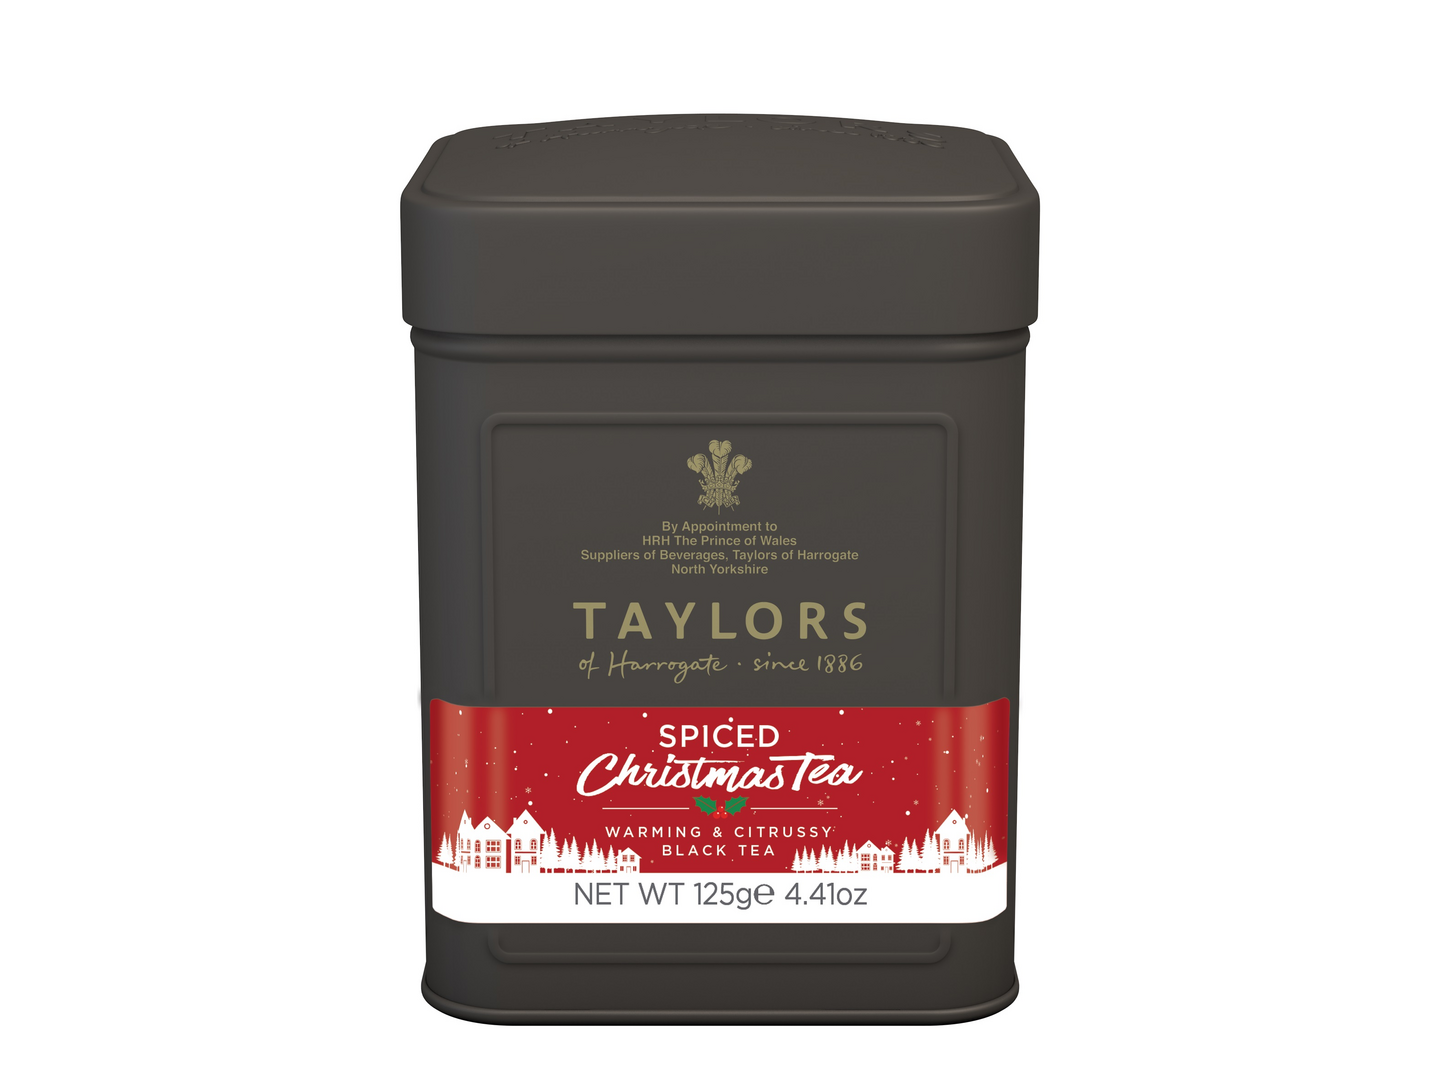 Taylors of Harrogate Spiced Christmas Tea Musta joulutee irto 125 g rainforest alliance